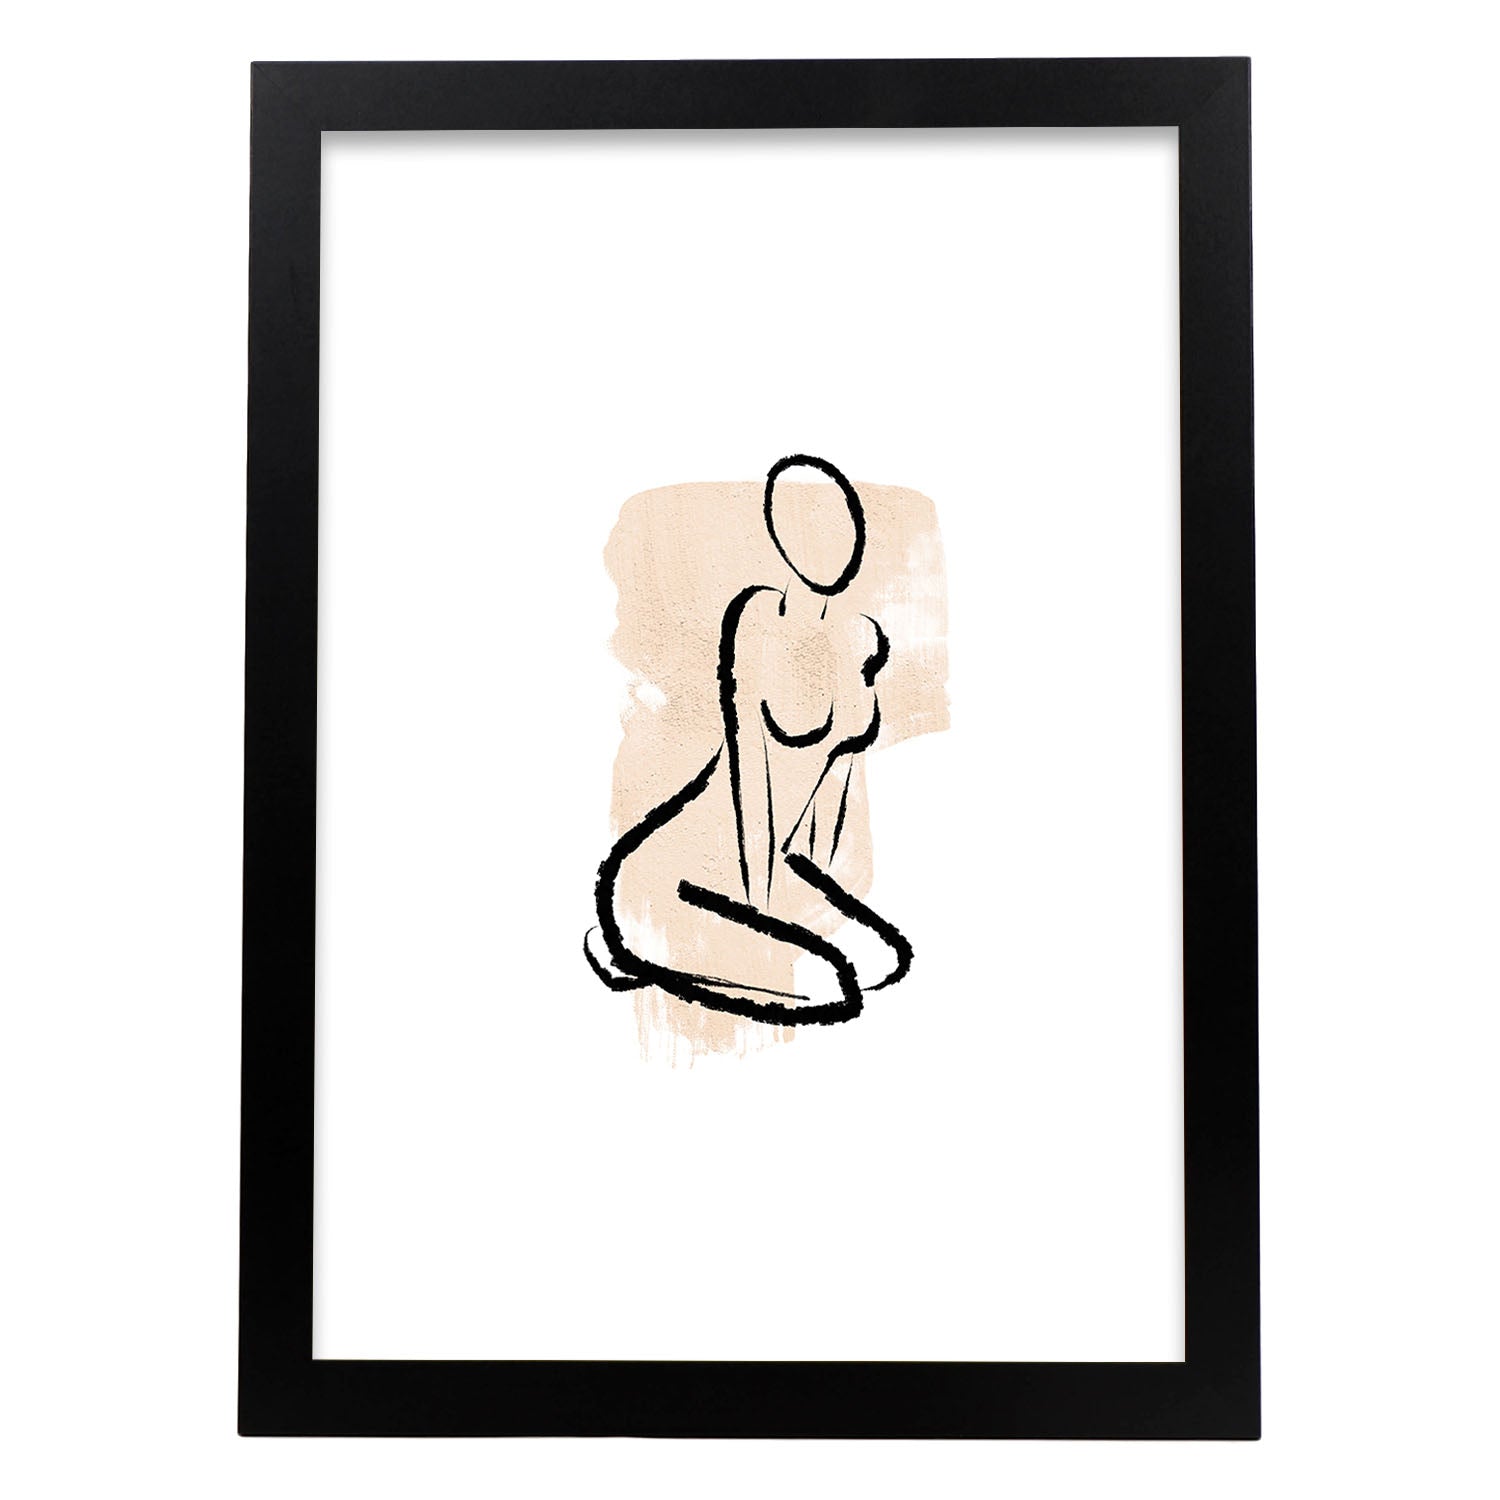 Poster con ilustracion de mujer. Dibujos con formas, caras, cuerpos y gestos de mujeres. 'Mujeres 16'.-Artwork-Nacnic-A3-Marco Negro-Nacnic Estudio SL